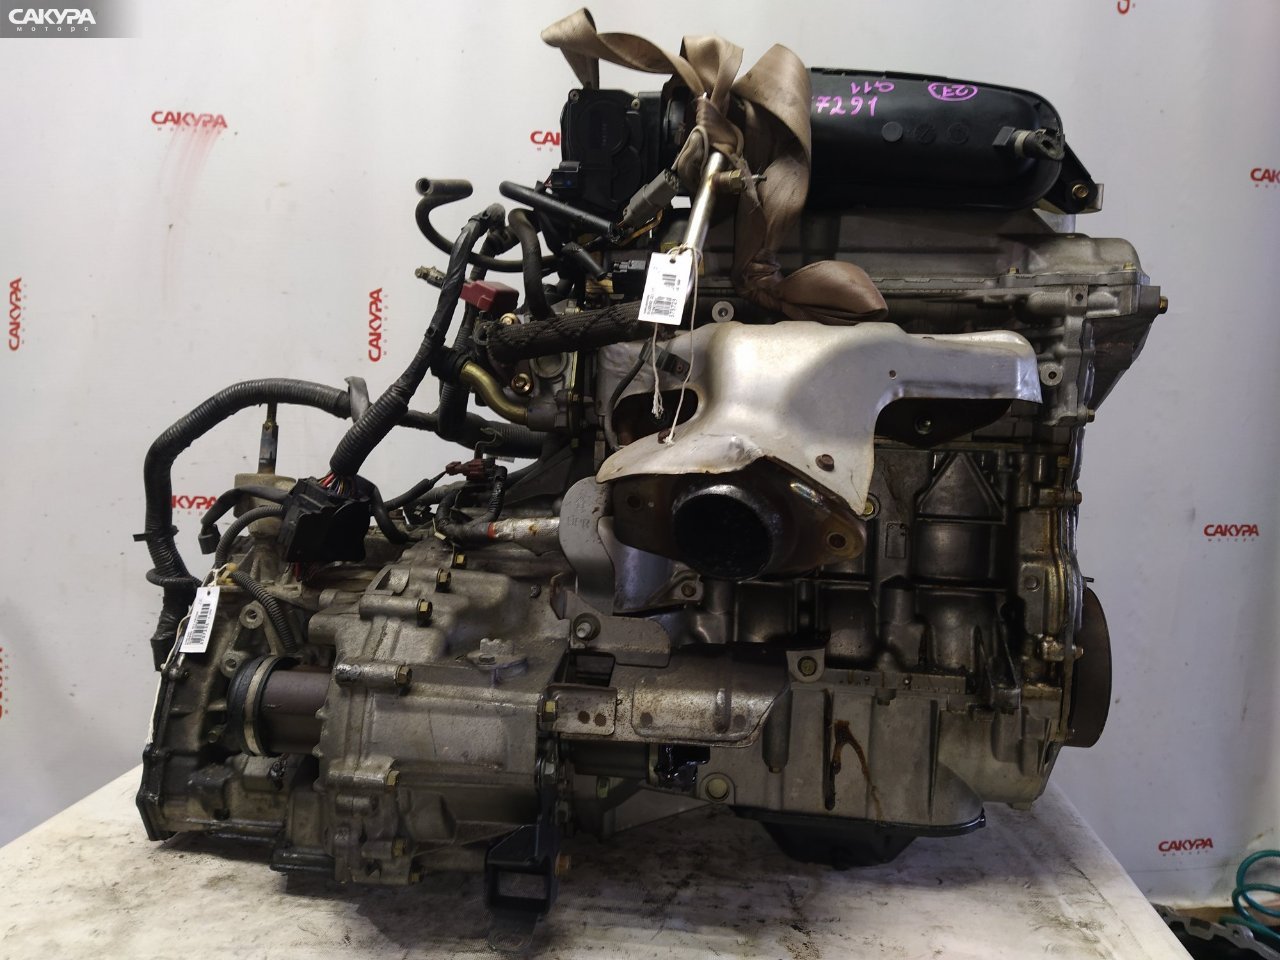 Двигатель Nissan Bluebird Sylphy G11 HR15DE: купить в Сакура Красноярск.